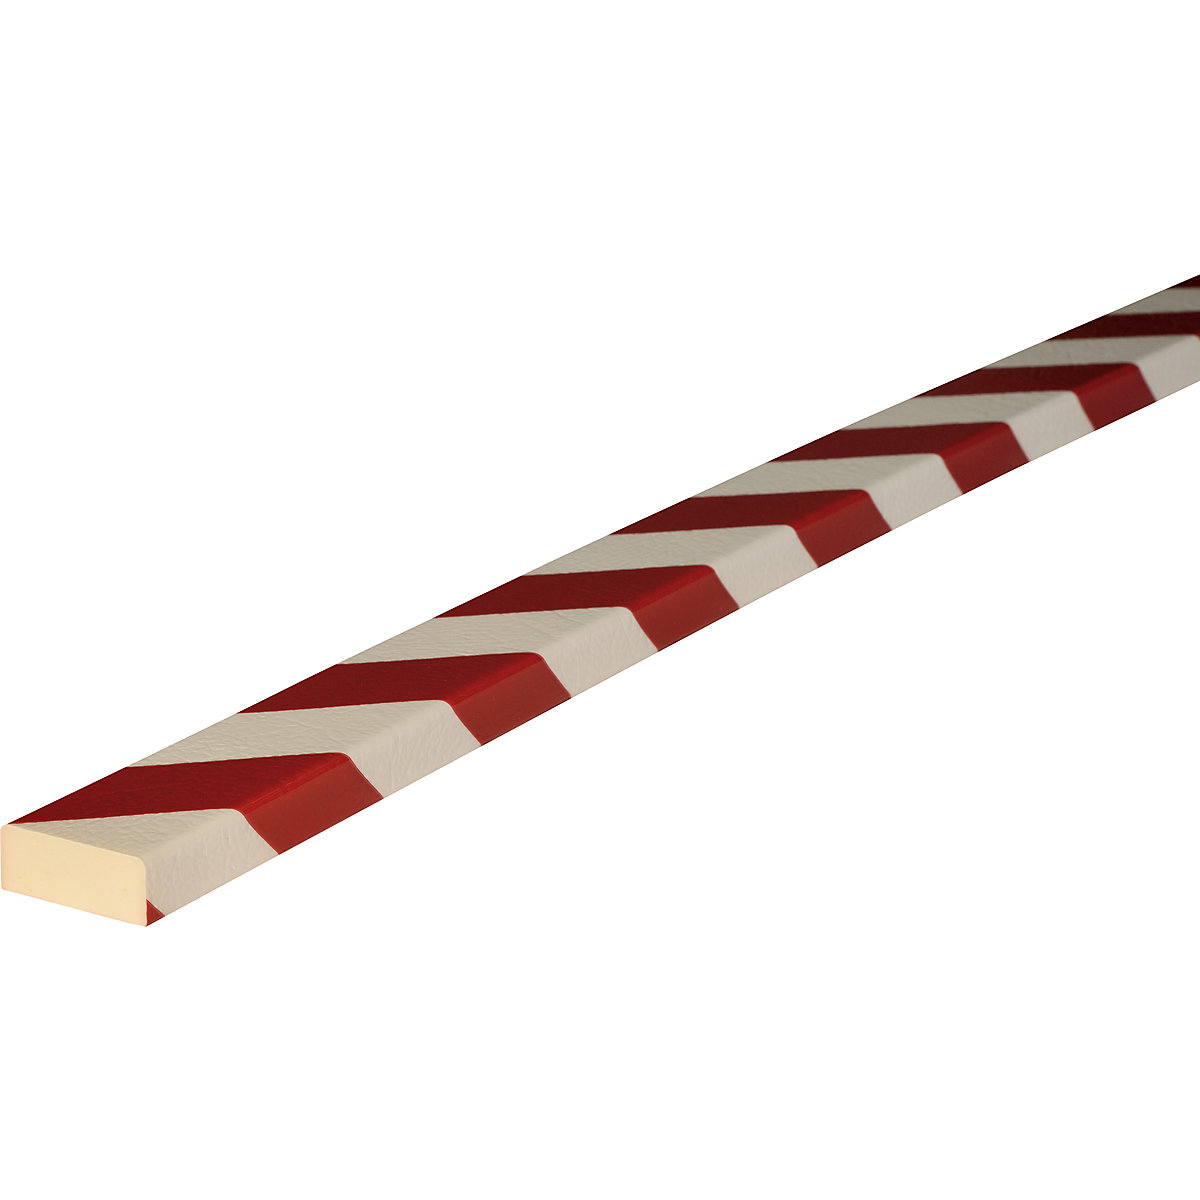 Protection des surfaces Knuffi® – SHG, type D, 1 rouleau de 5 m, rouge / blanc